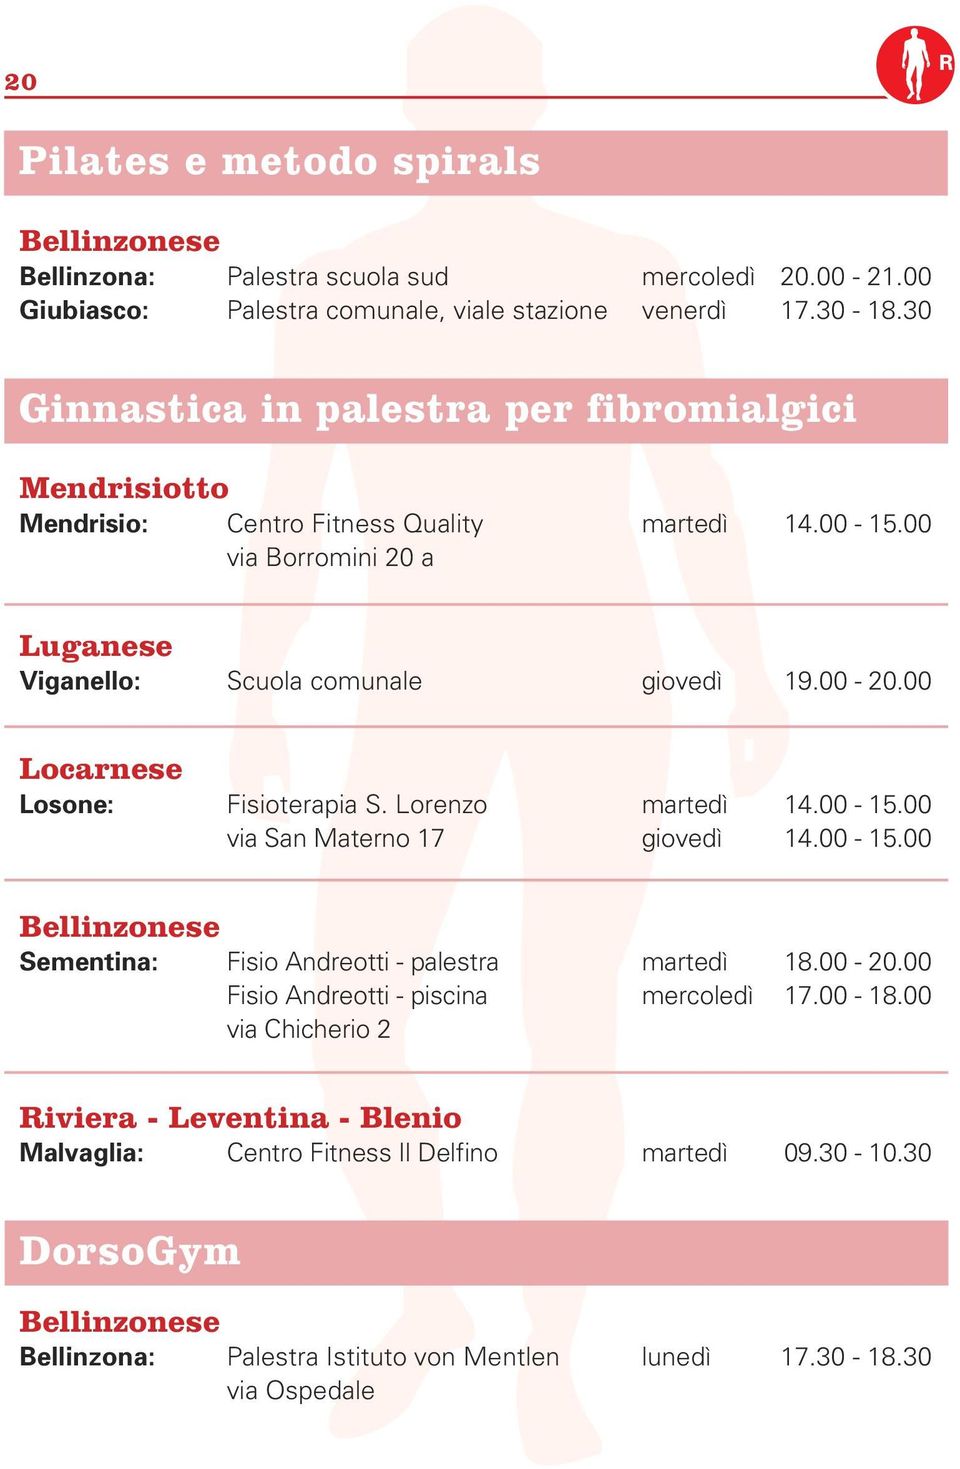 00 Locarnese Losone: Fisioterapia S. Lorenzo martedì 14.00-15.00 via San Materno 17 giovedì 14.00-15.00 Bellinzonese Sementina: Fisio Andreotti - palestra martedì 18.00-20.